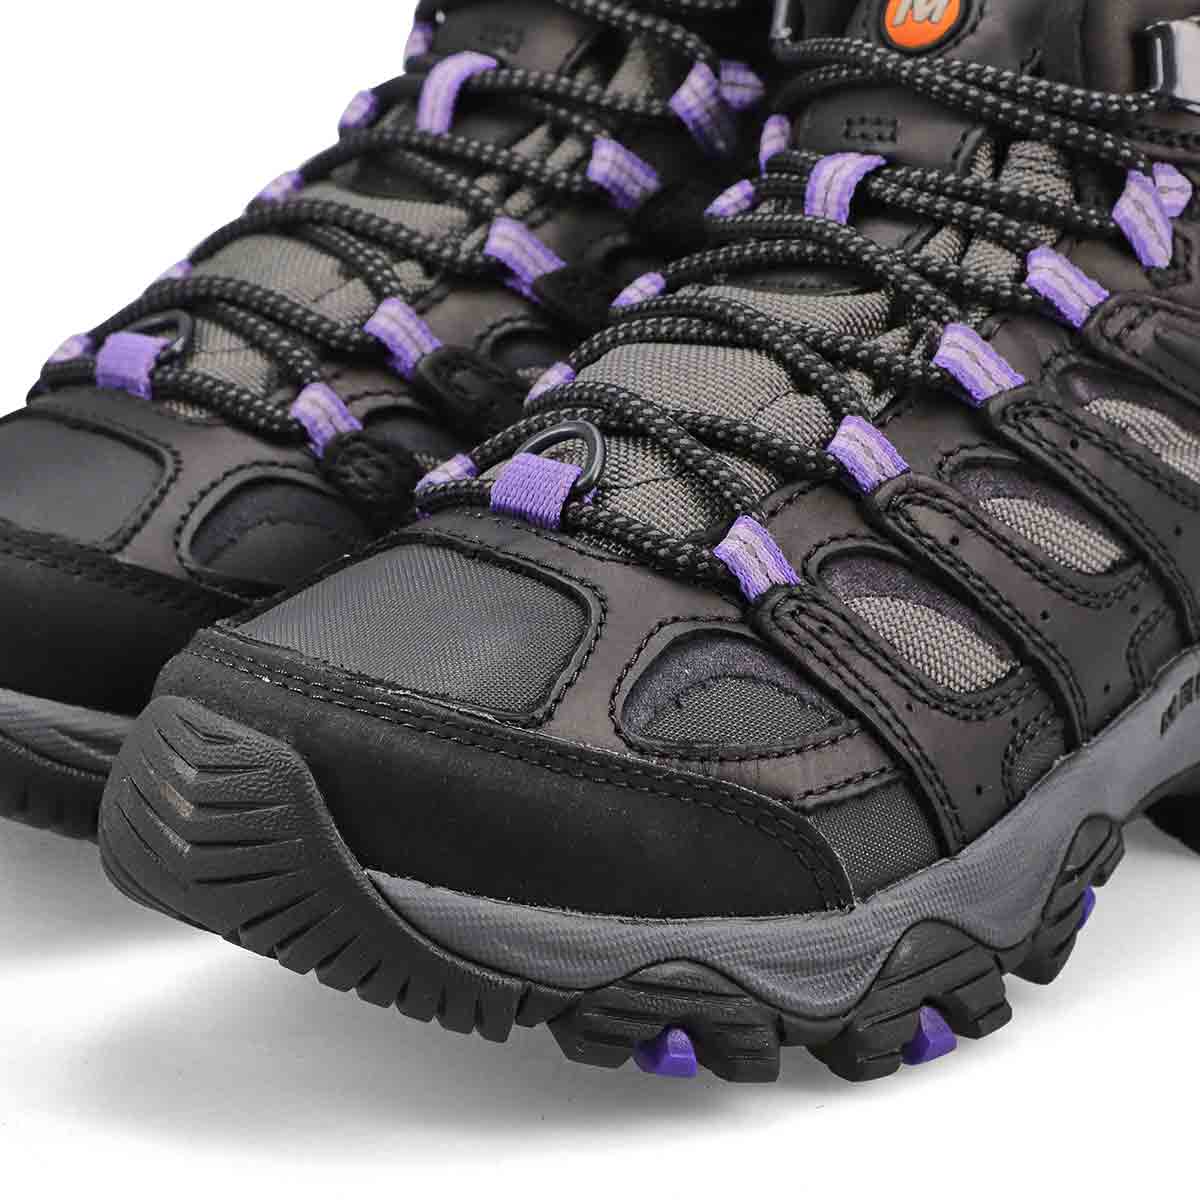 Chaussure de randonnée imperméable MOAB 3 THERMO, femmes